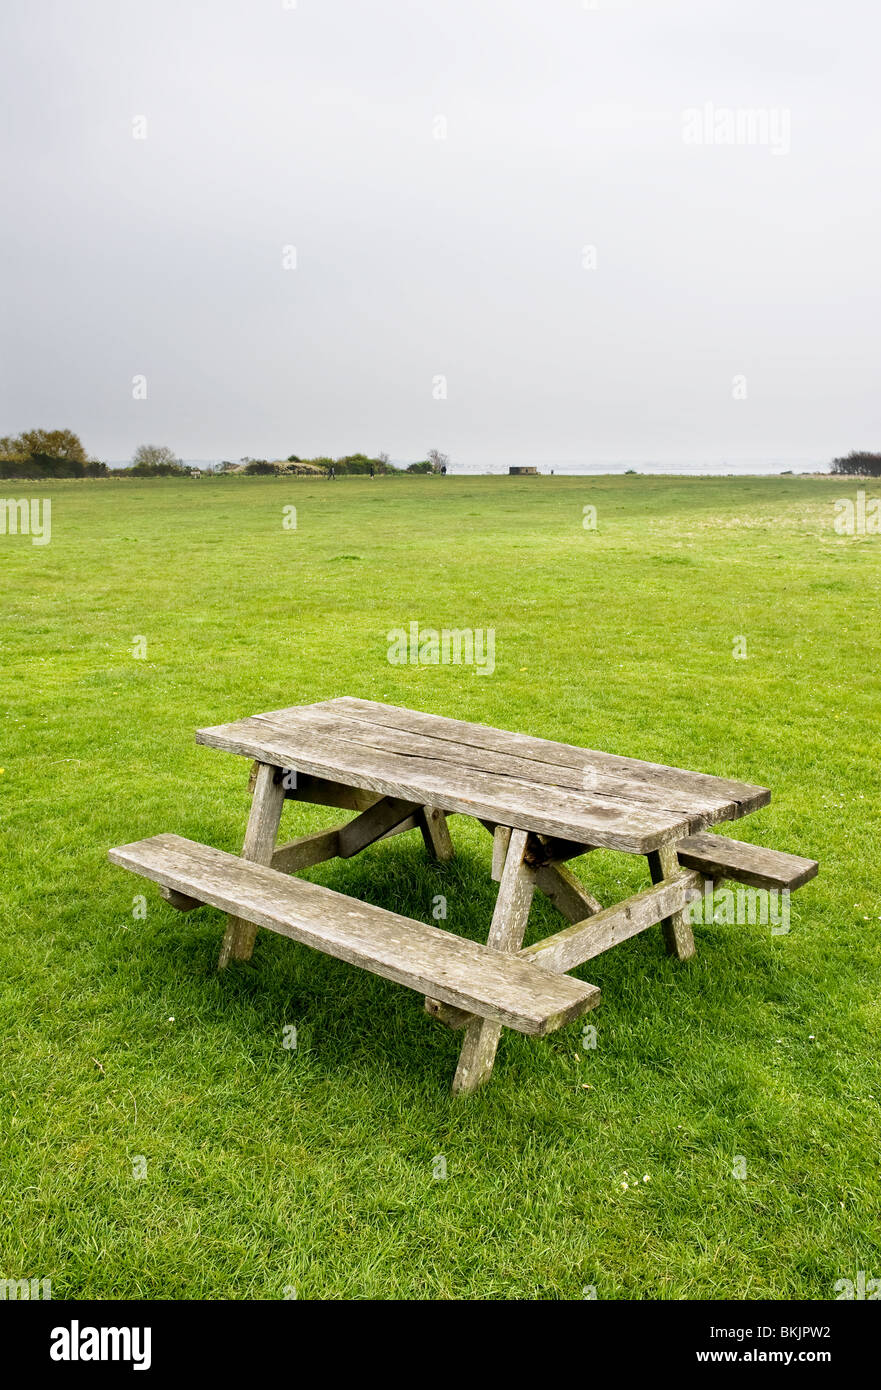 Une table de pique-nique en bois vide dans un champ. Banque D'Images